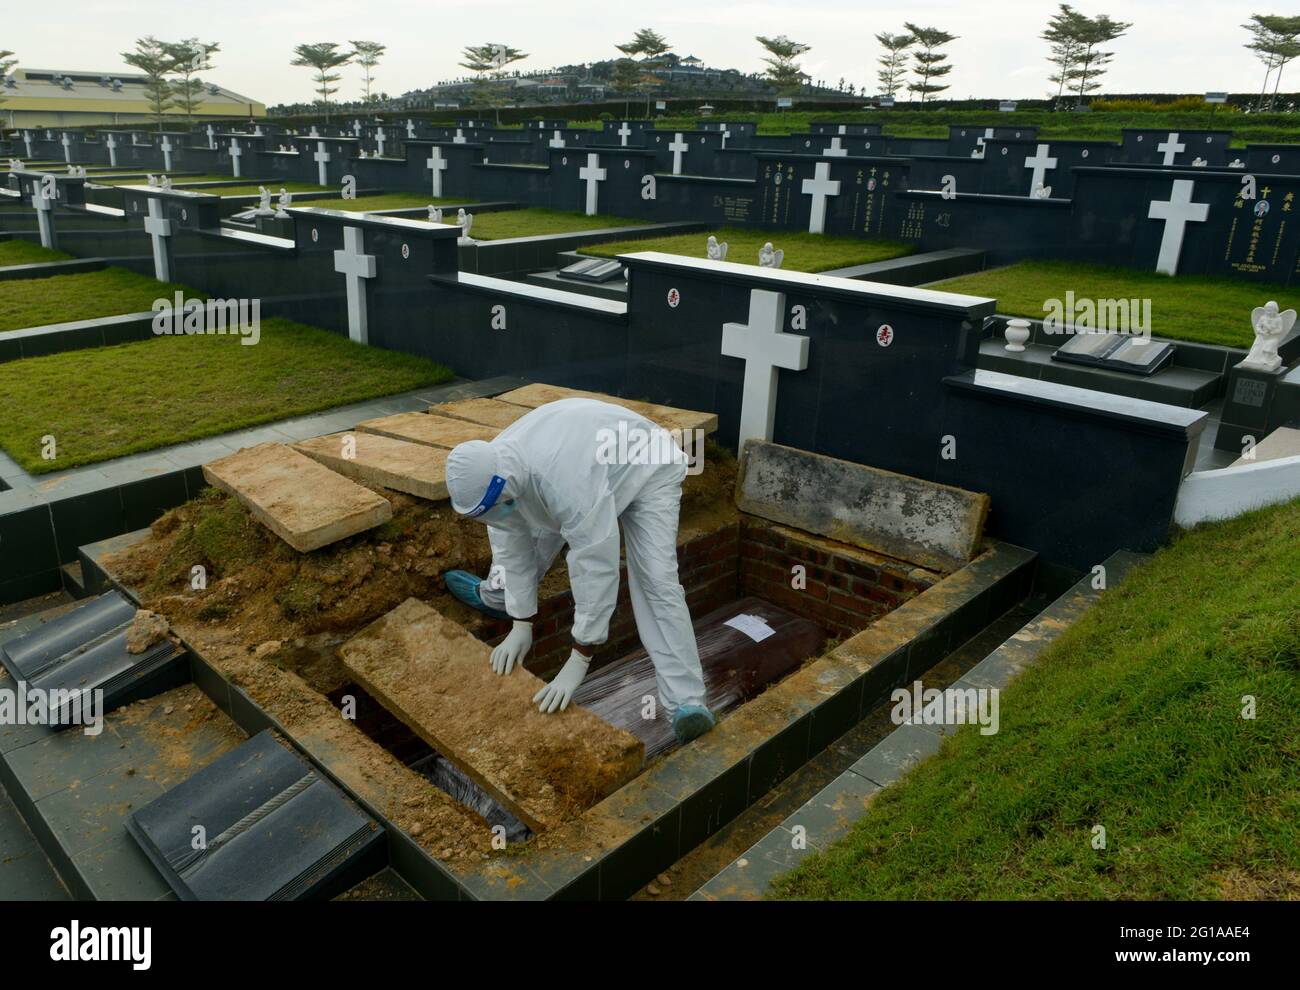 Klang, Selangor, Malaisie. 6 juin 2021. Employé des services funéraires portant des équipements de protection individuelle (EPI) enterrez le cercueil d'une victime de la maladie du coronavirus (COVID-19) au cimetière crédit: Kepy/ZUMA Wire/Alay Live News Banque D'Images